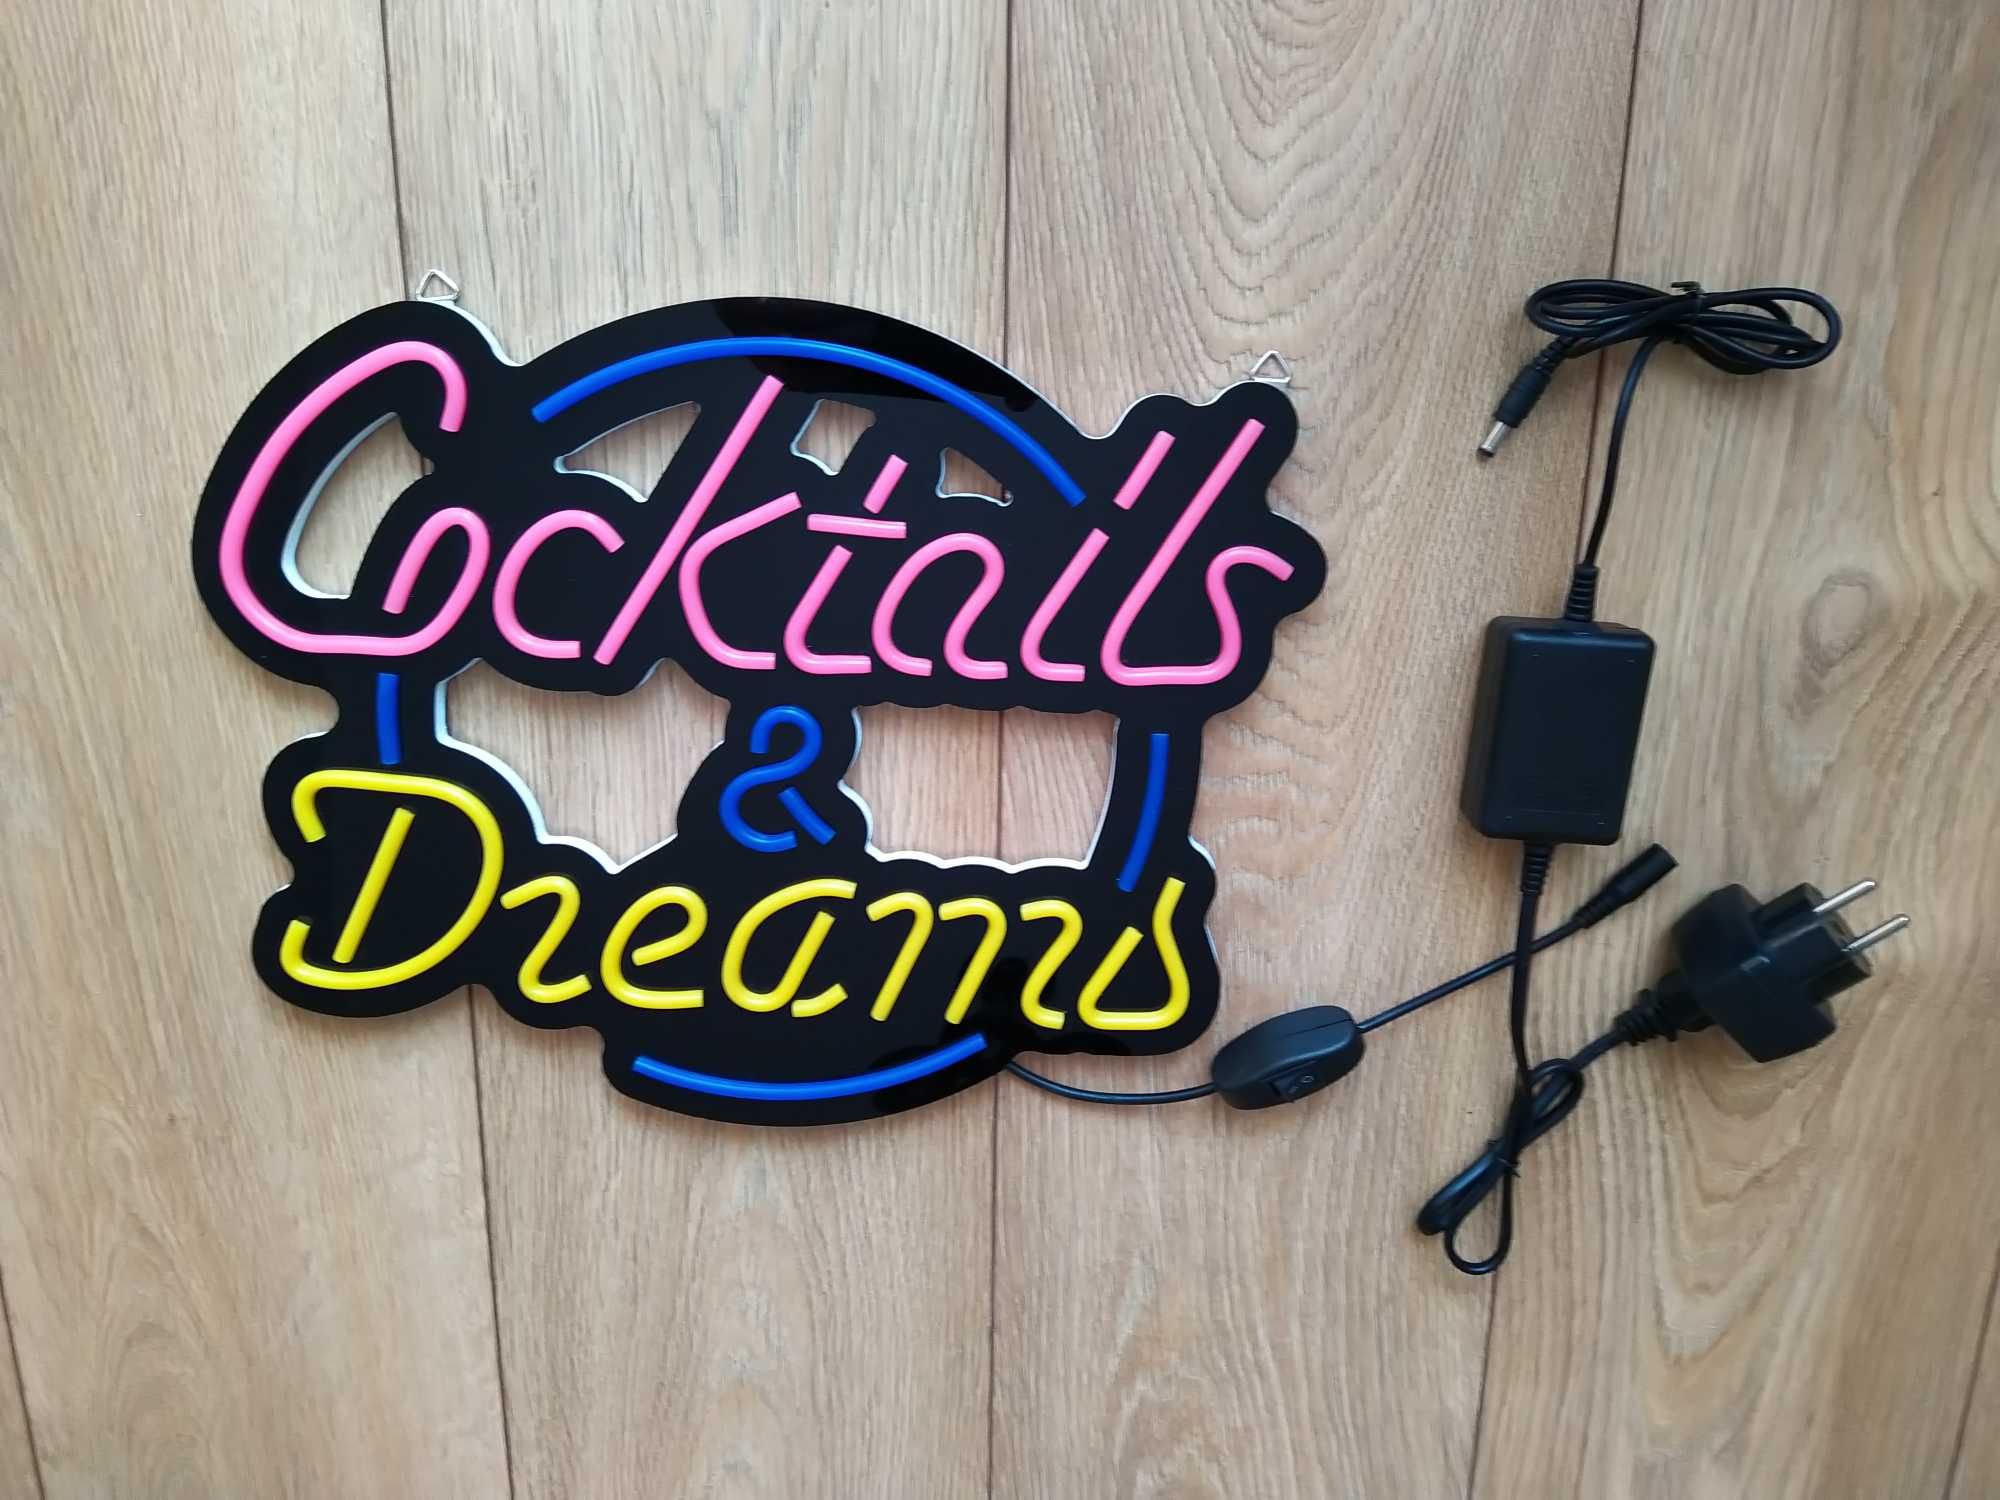 Neon świetlny "Cocktails and Dreams"